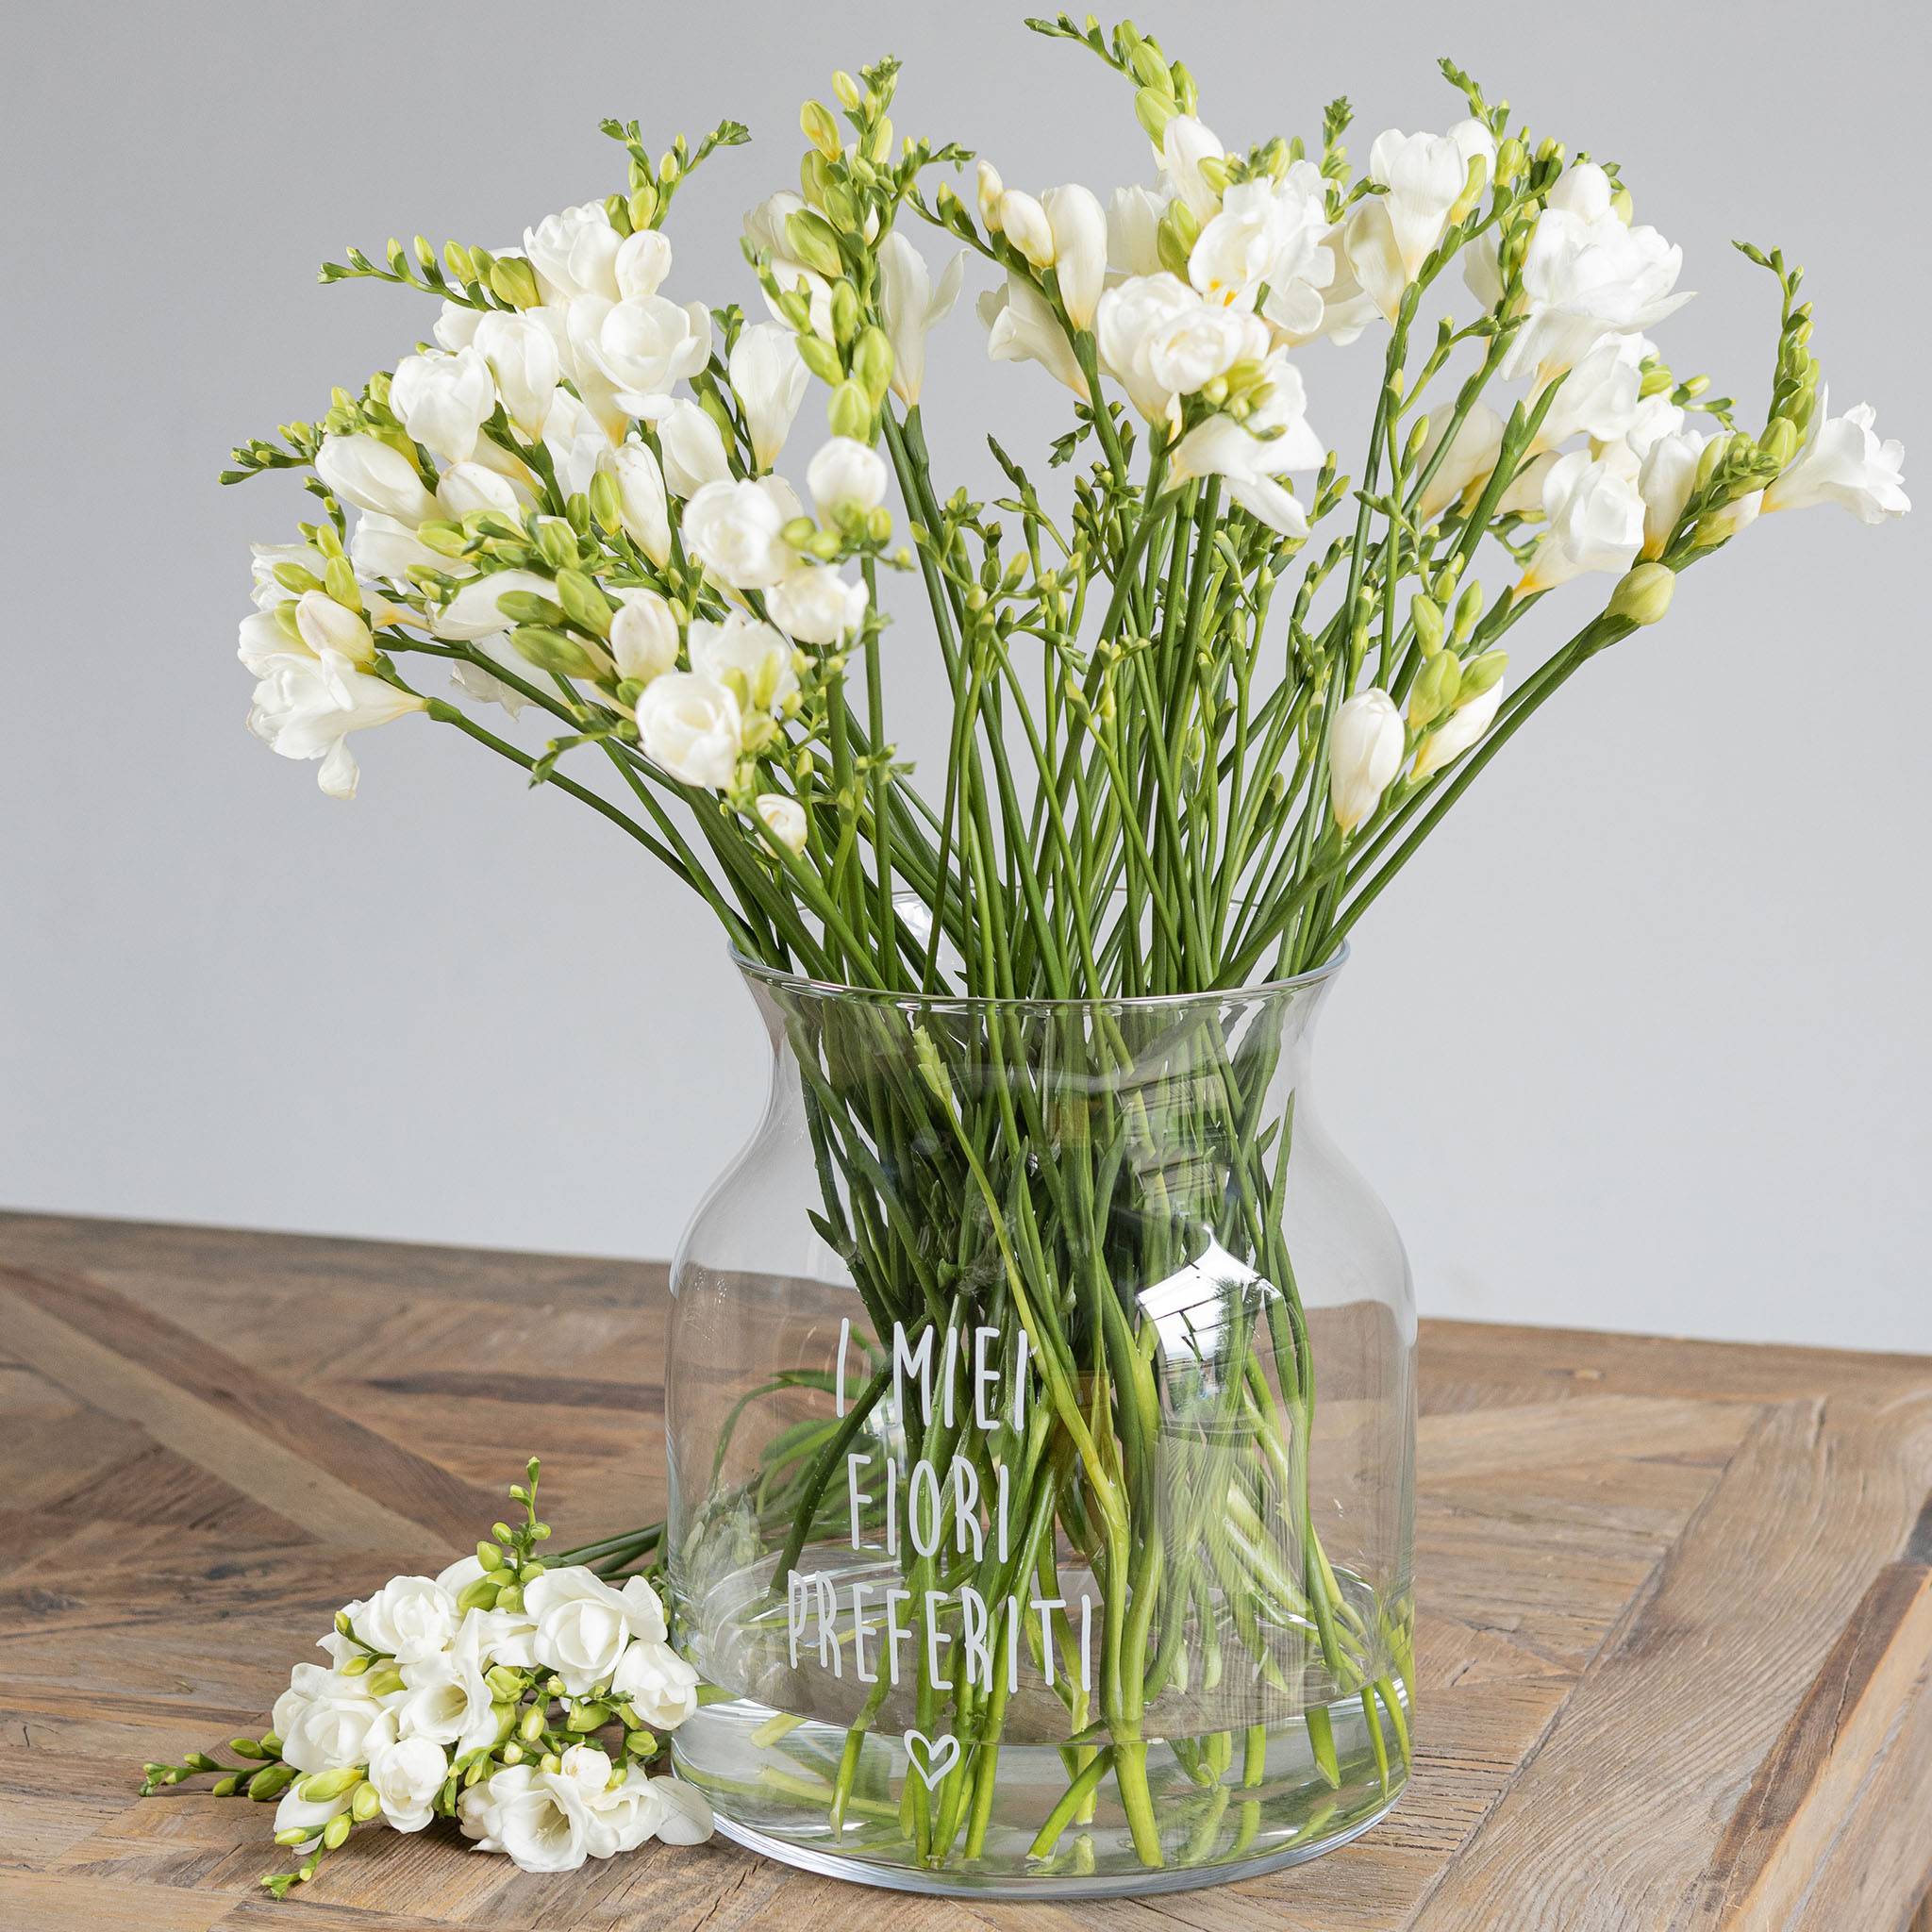 Vase Portofiori Decorate my favorite flowers